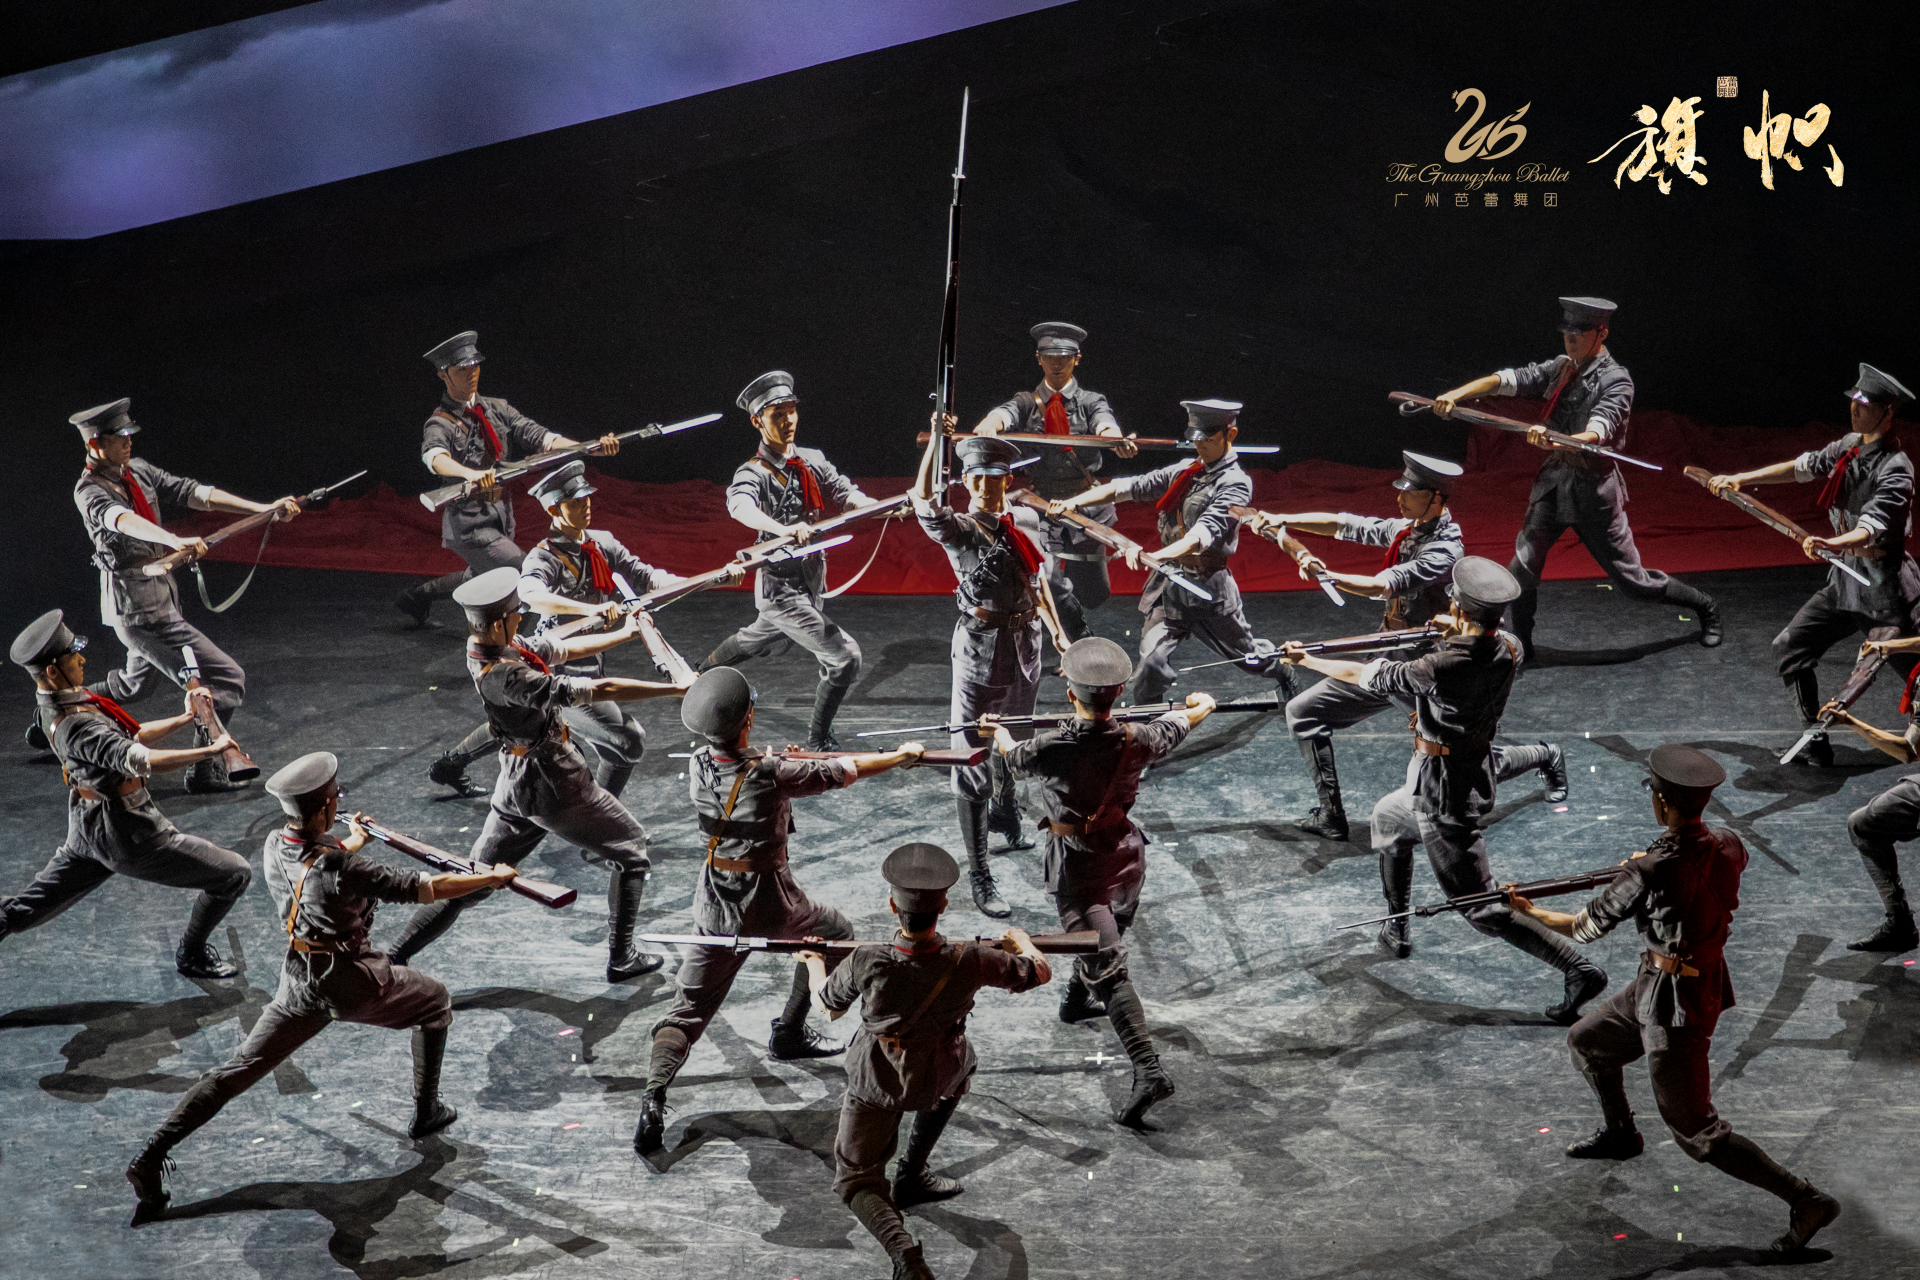 广州芭蕾舞团创作大型原创芭蕾舞剧 《旗帜》——2021年光明区文化馆“文化惠民”系列文艺展演活动